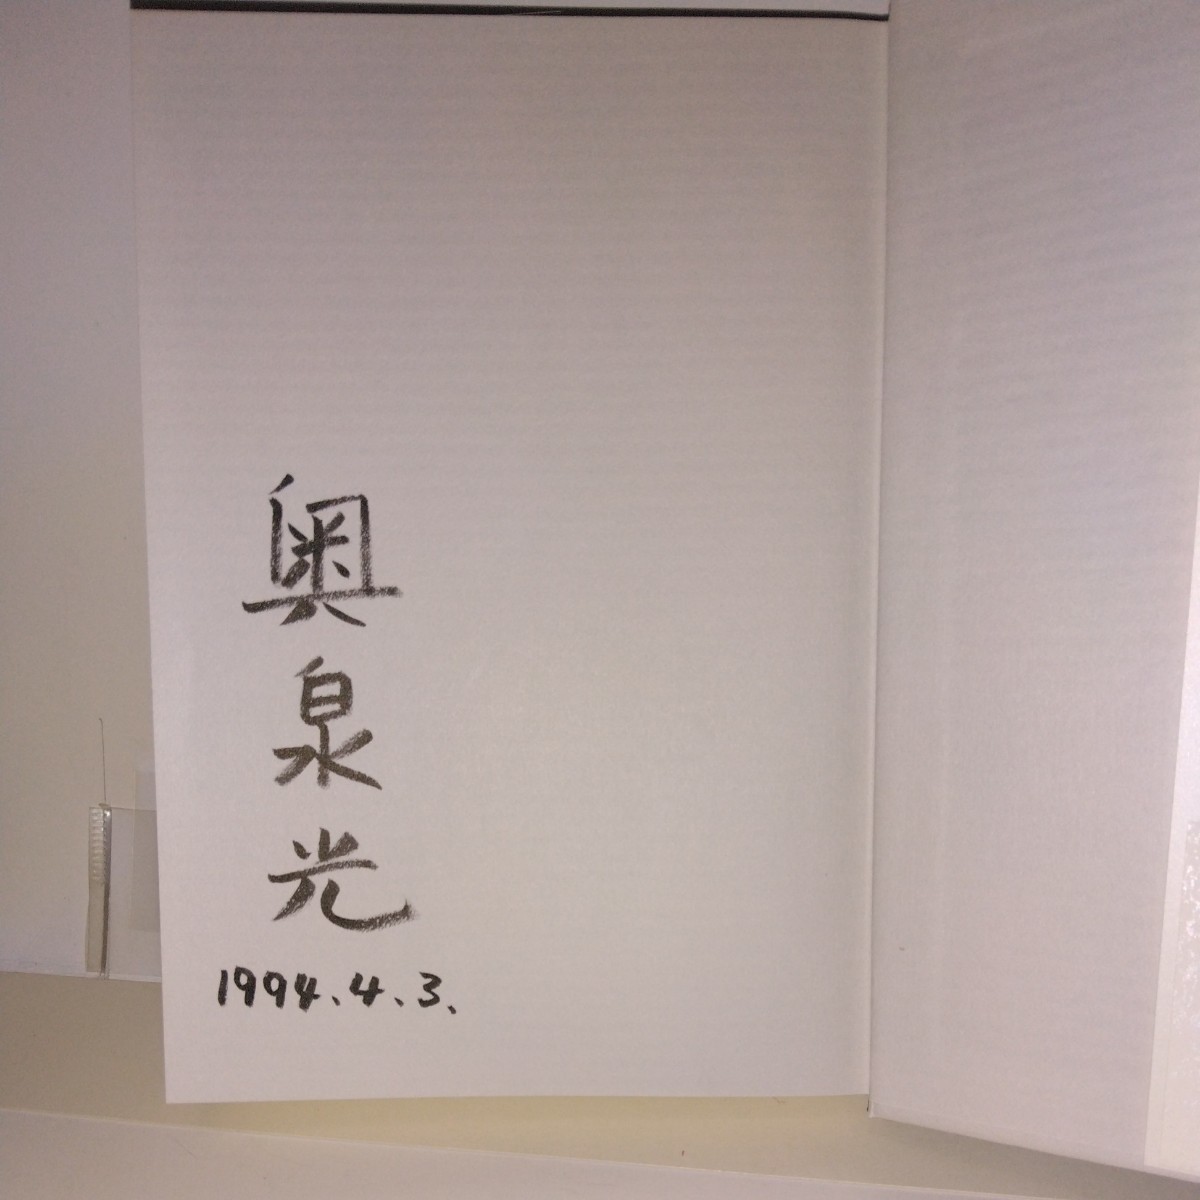 [ камень. . история ] Okuizumi Hikaru работа подпись * дата Bungeishunju . изначальный obi * no. 2 версия. новый . путеводитель * открытка имеется 